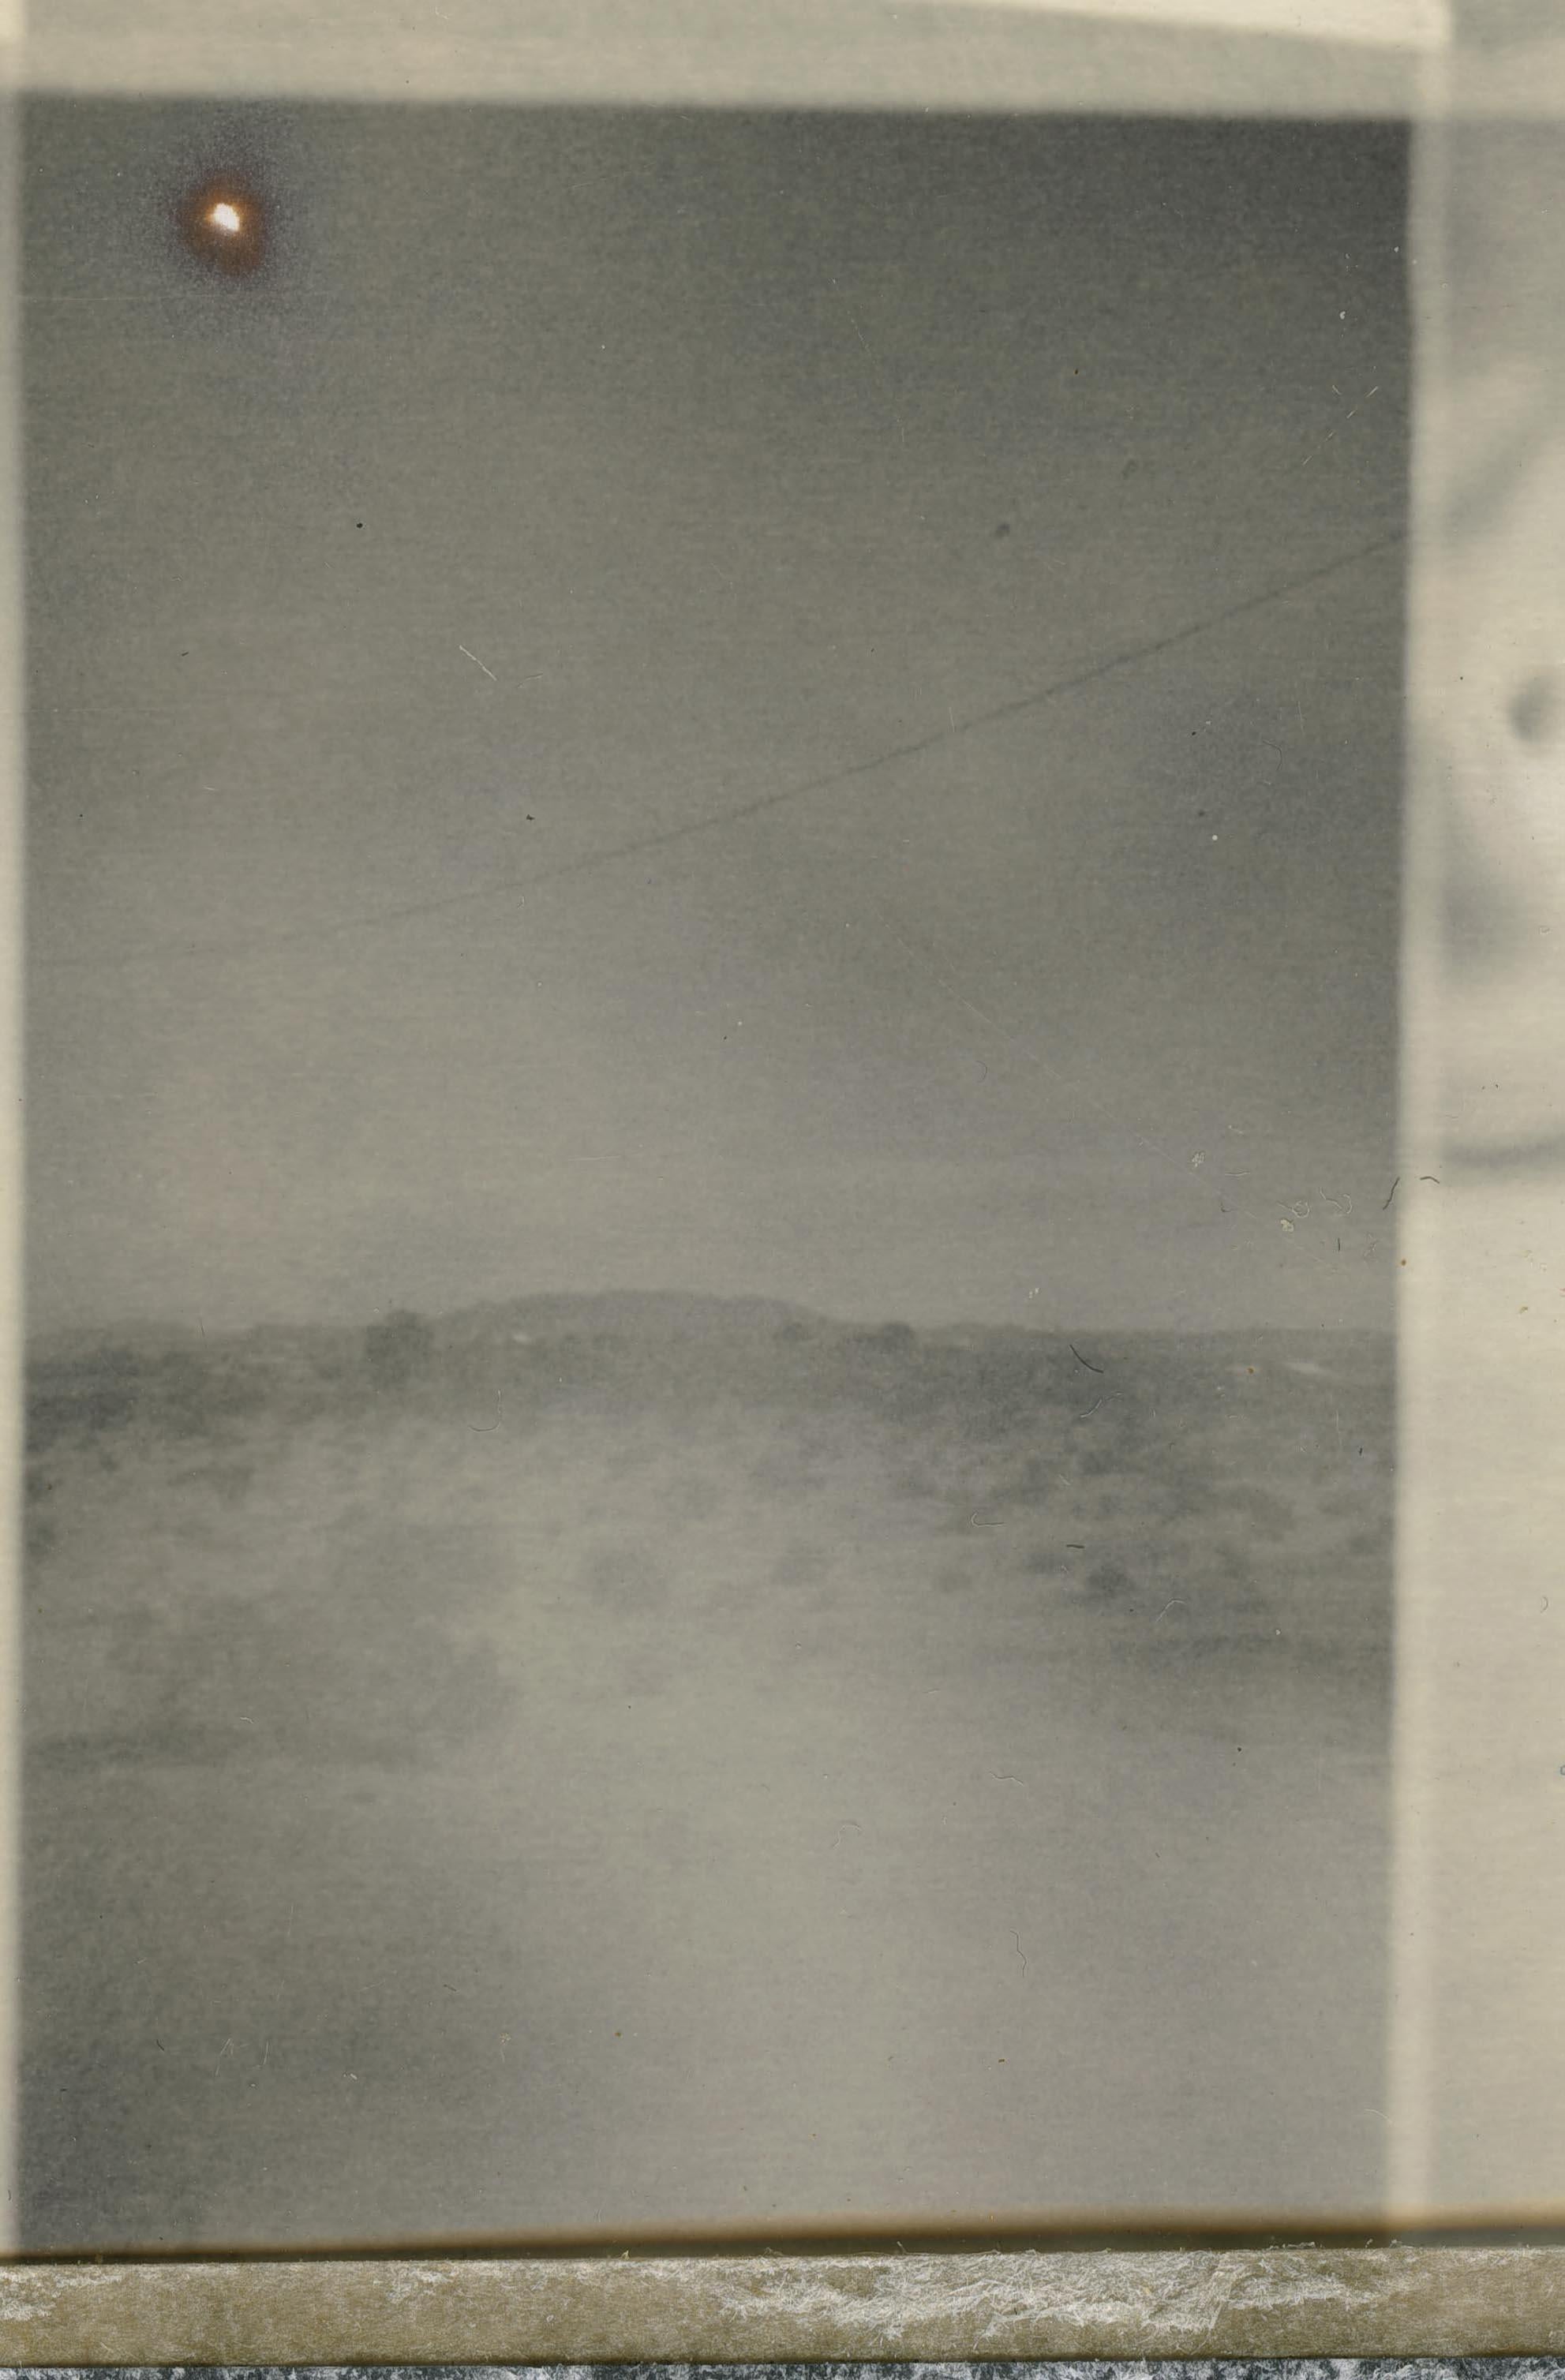 The Unconscious Mind (29 Palms, CA) - Polaroid, Contemporary, Wüste, Traum (Zeitgenössisch), Photograph, von Stefanie Schneider